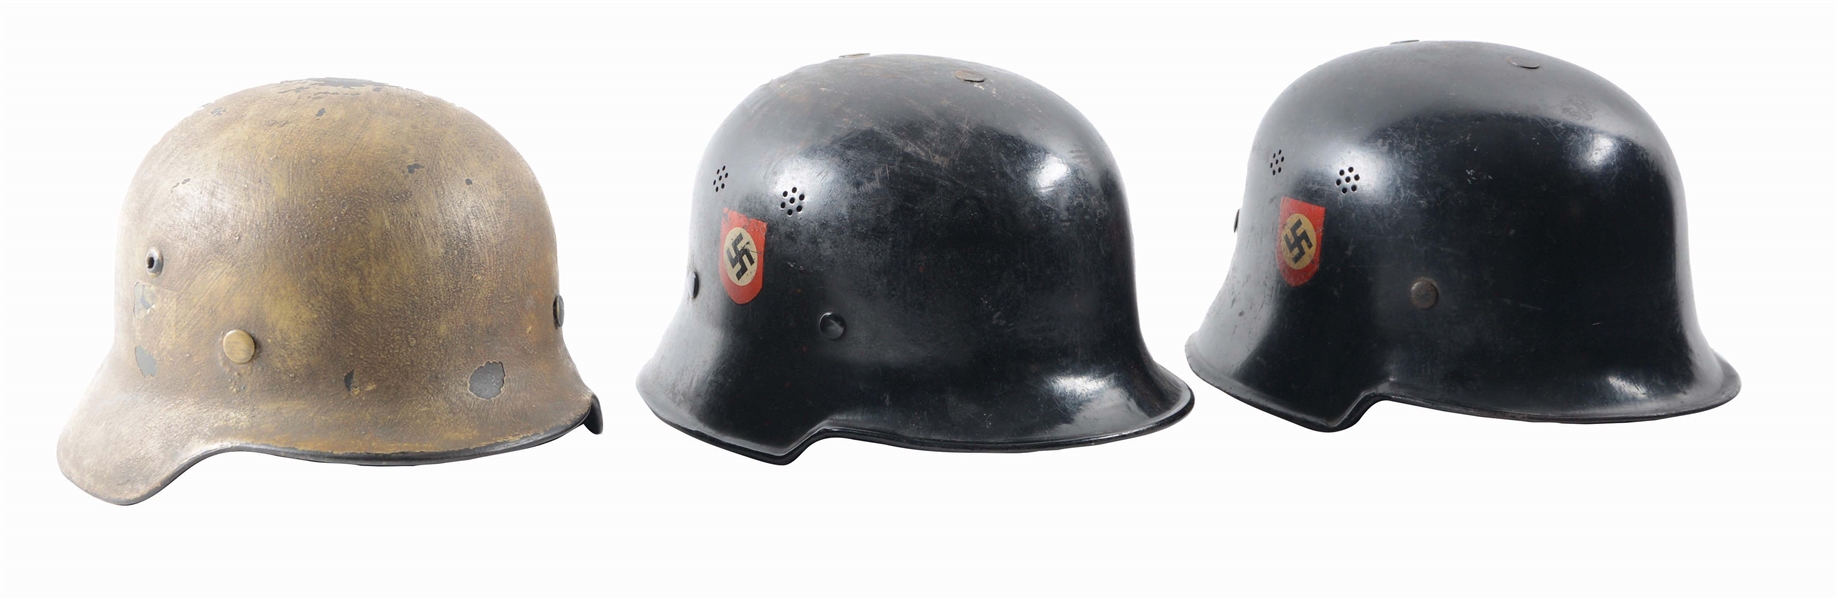 LOT OF 3: GERMAN WORLD WAR II COMBAT HELMET AND POLICE HELMETS.